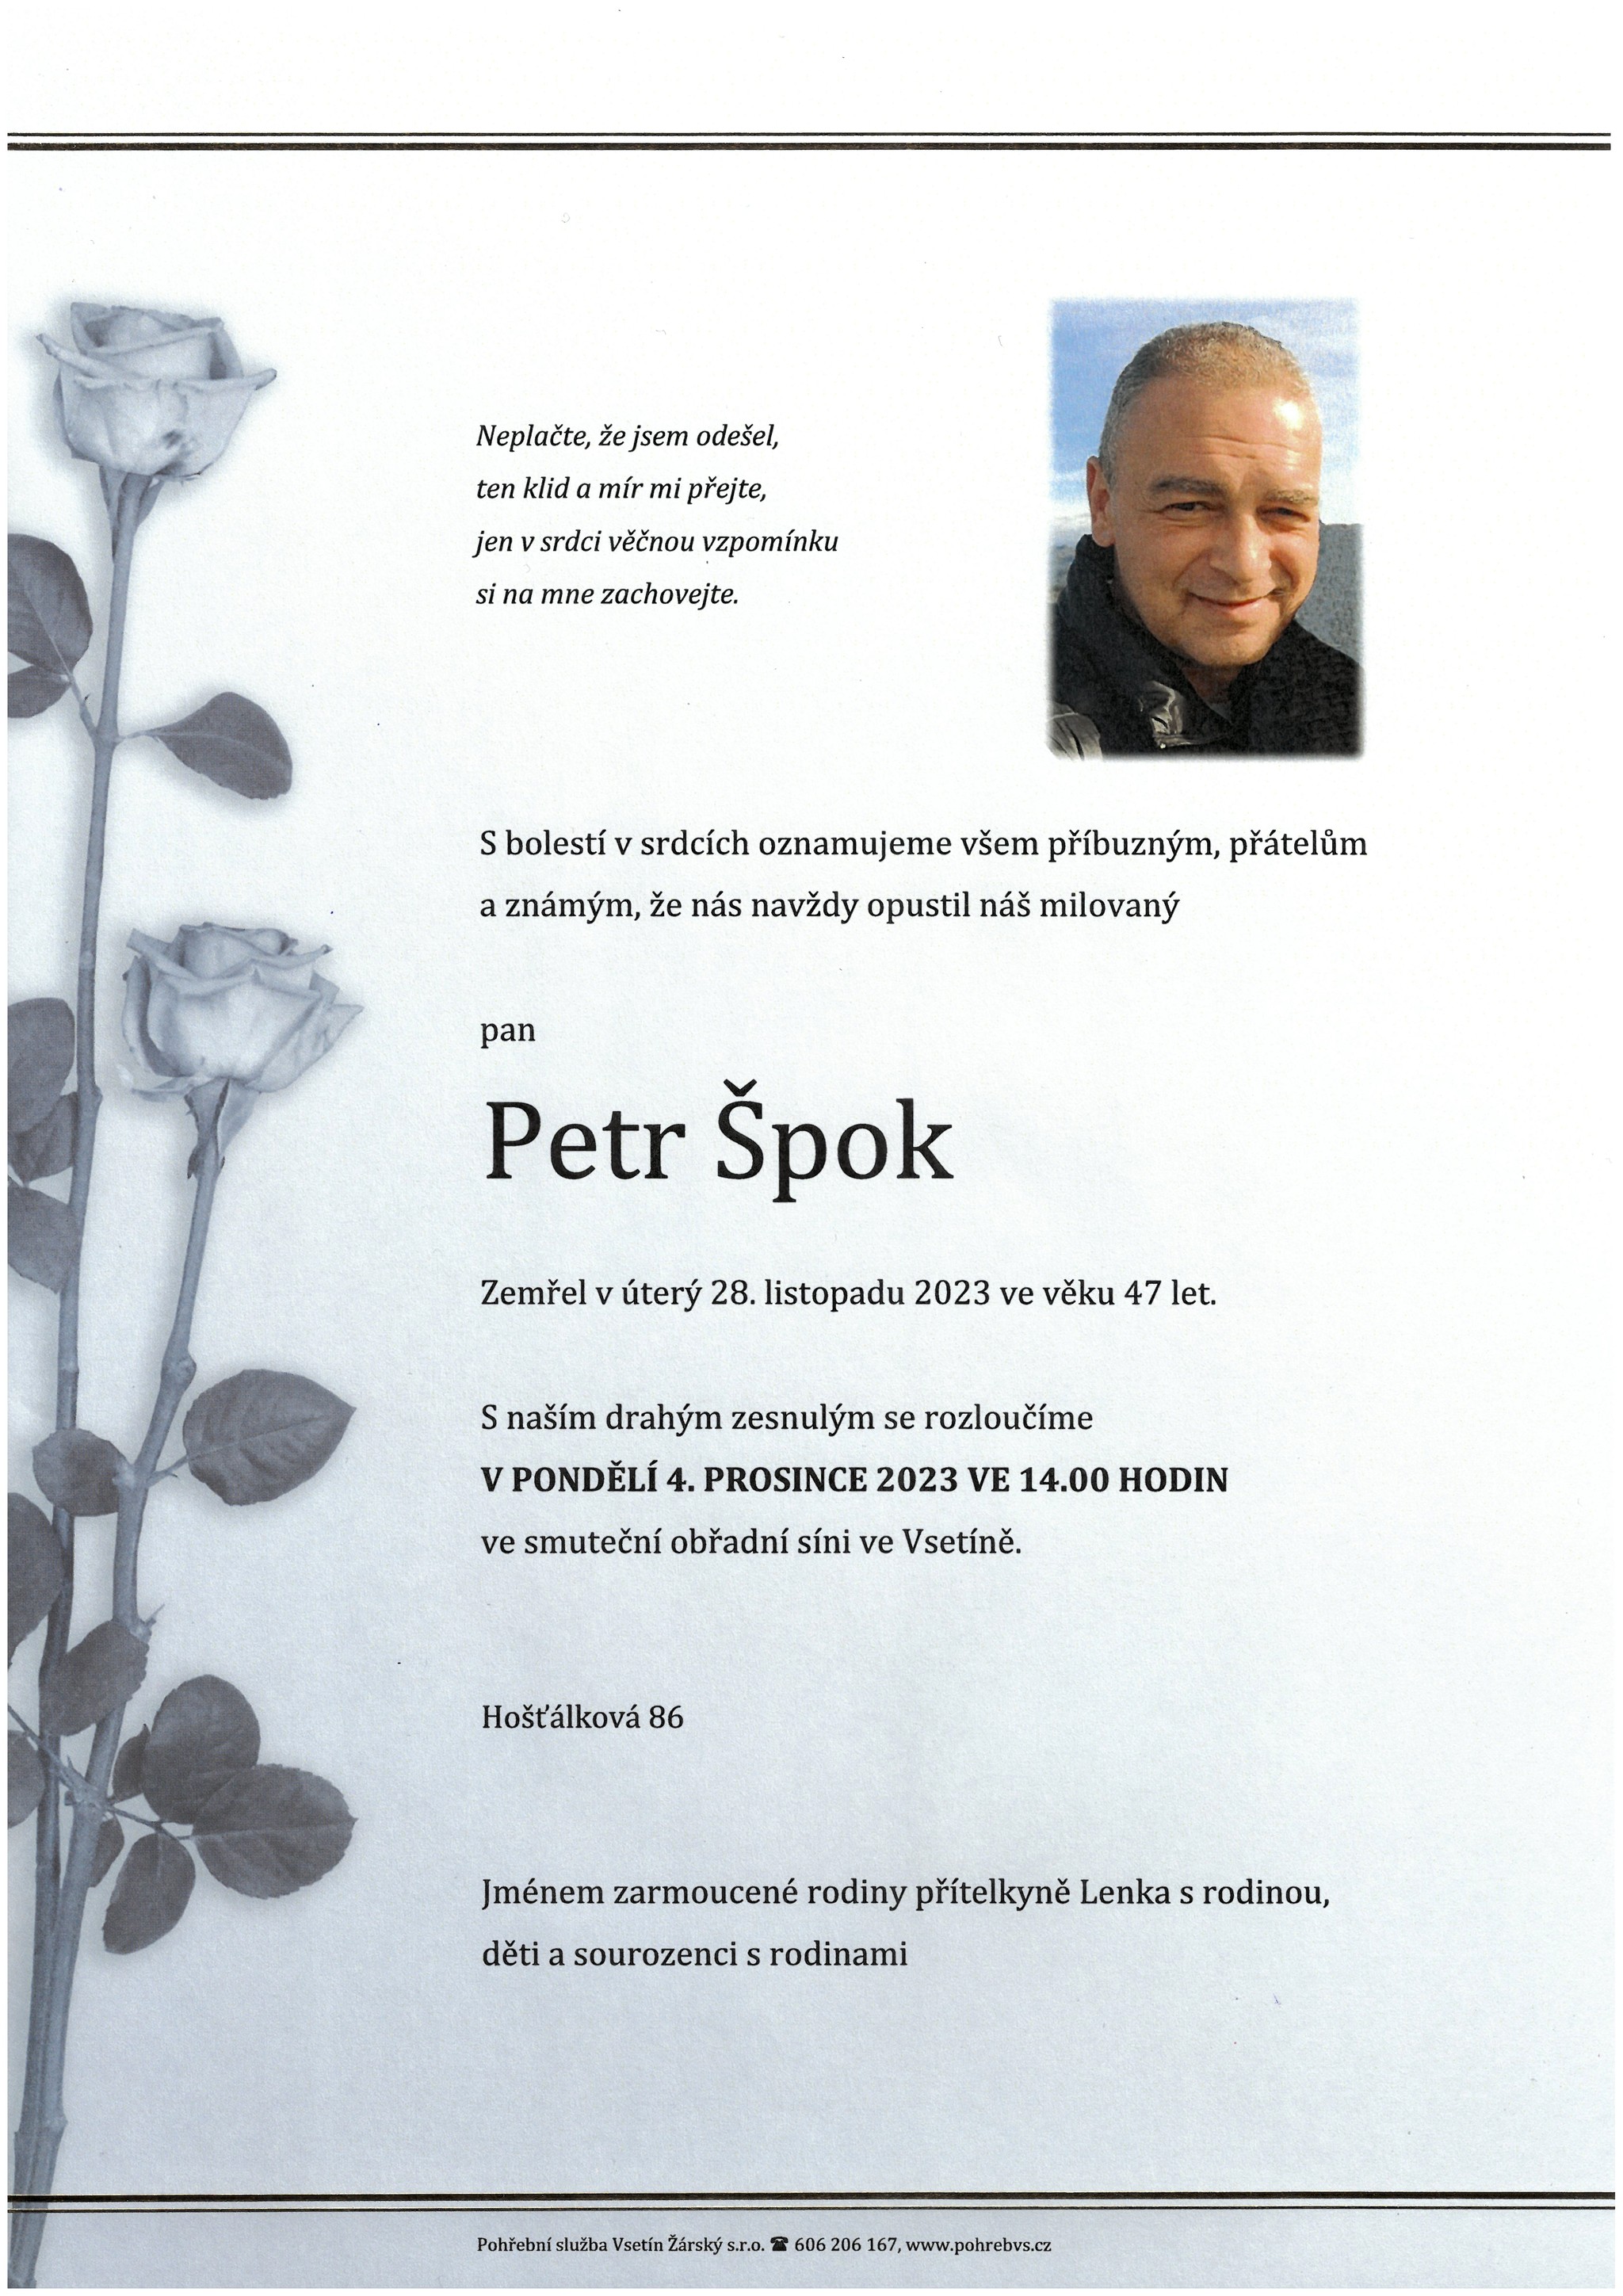 Petr Špok